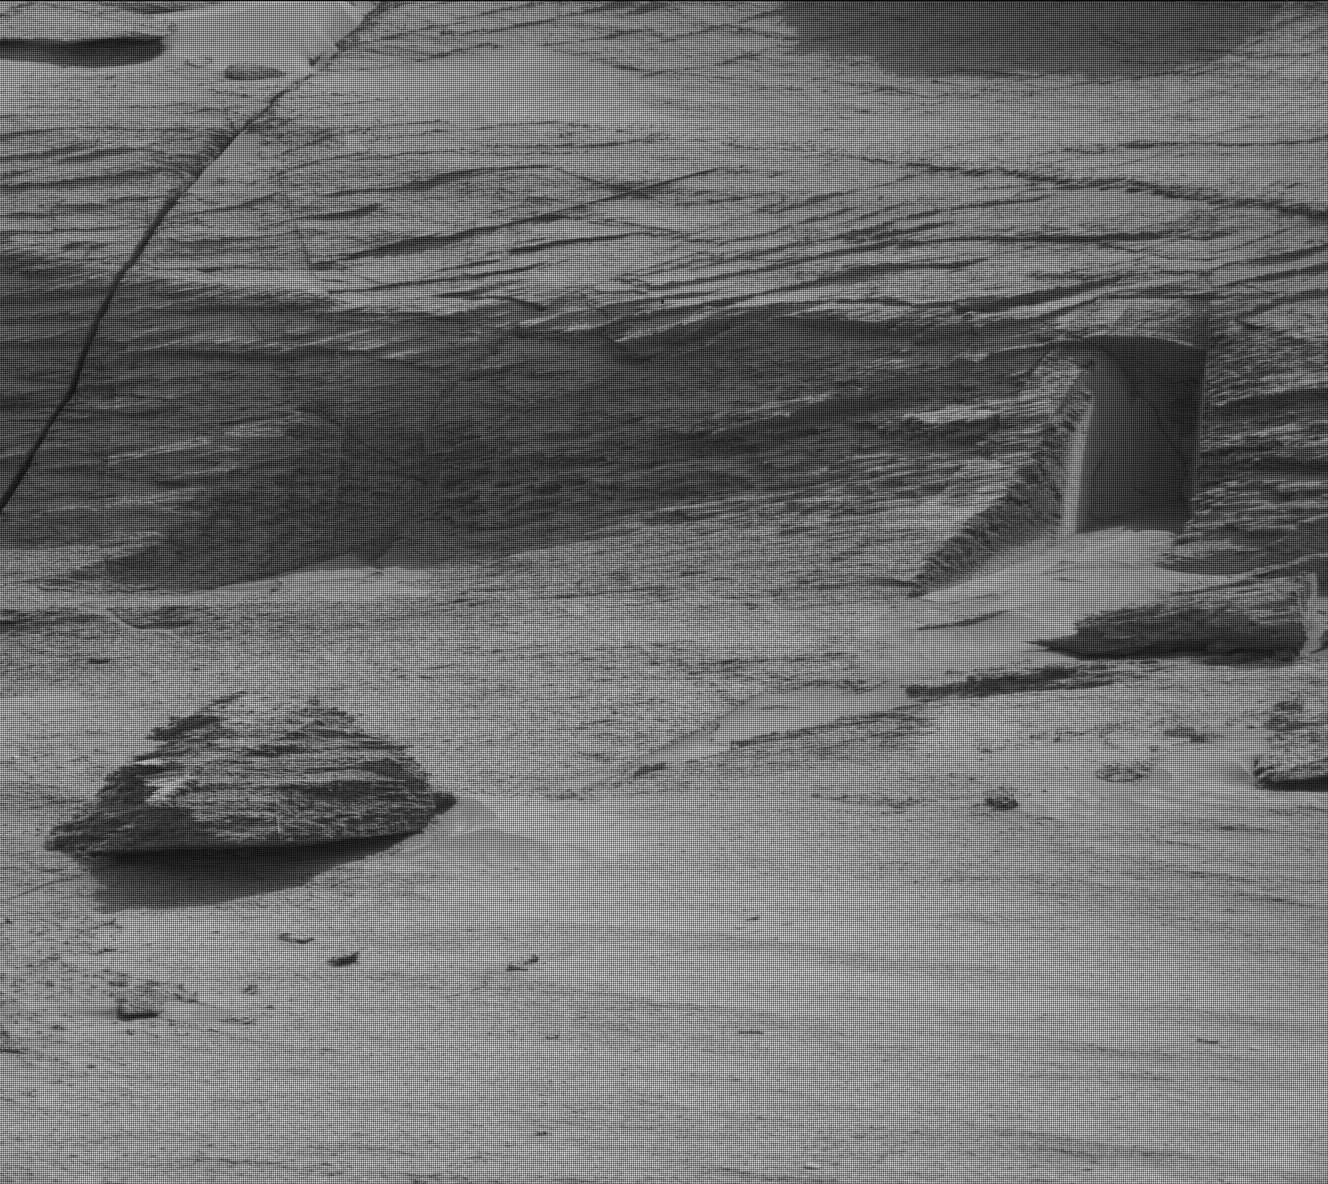 Zdjęcie wykonane przez łazik Curiosity 7 maja 2022 roku